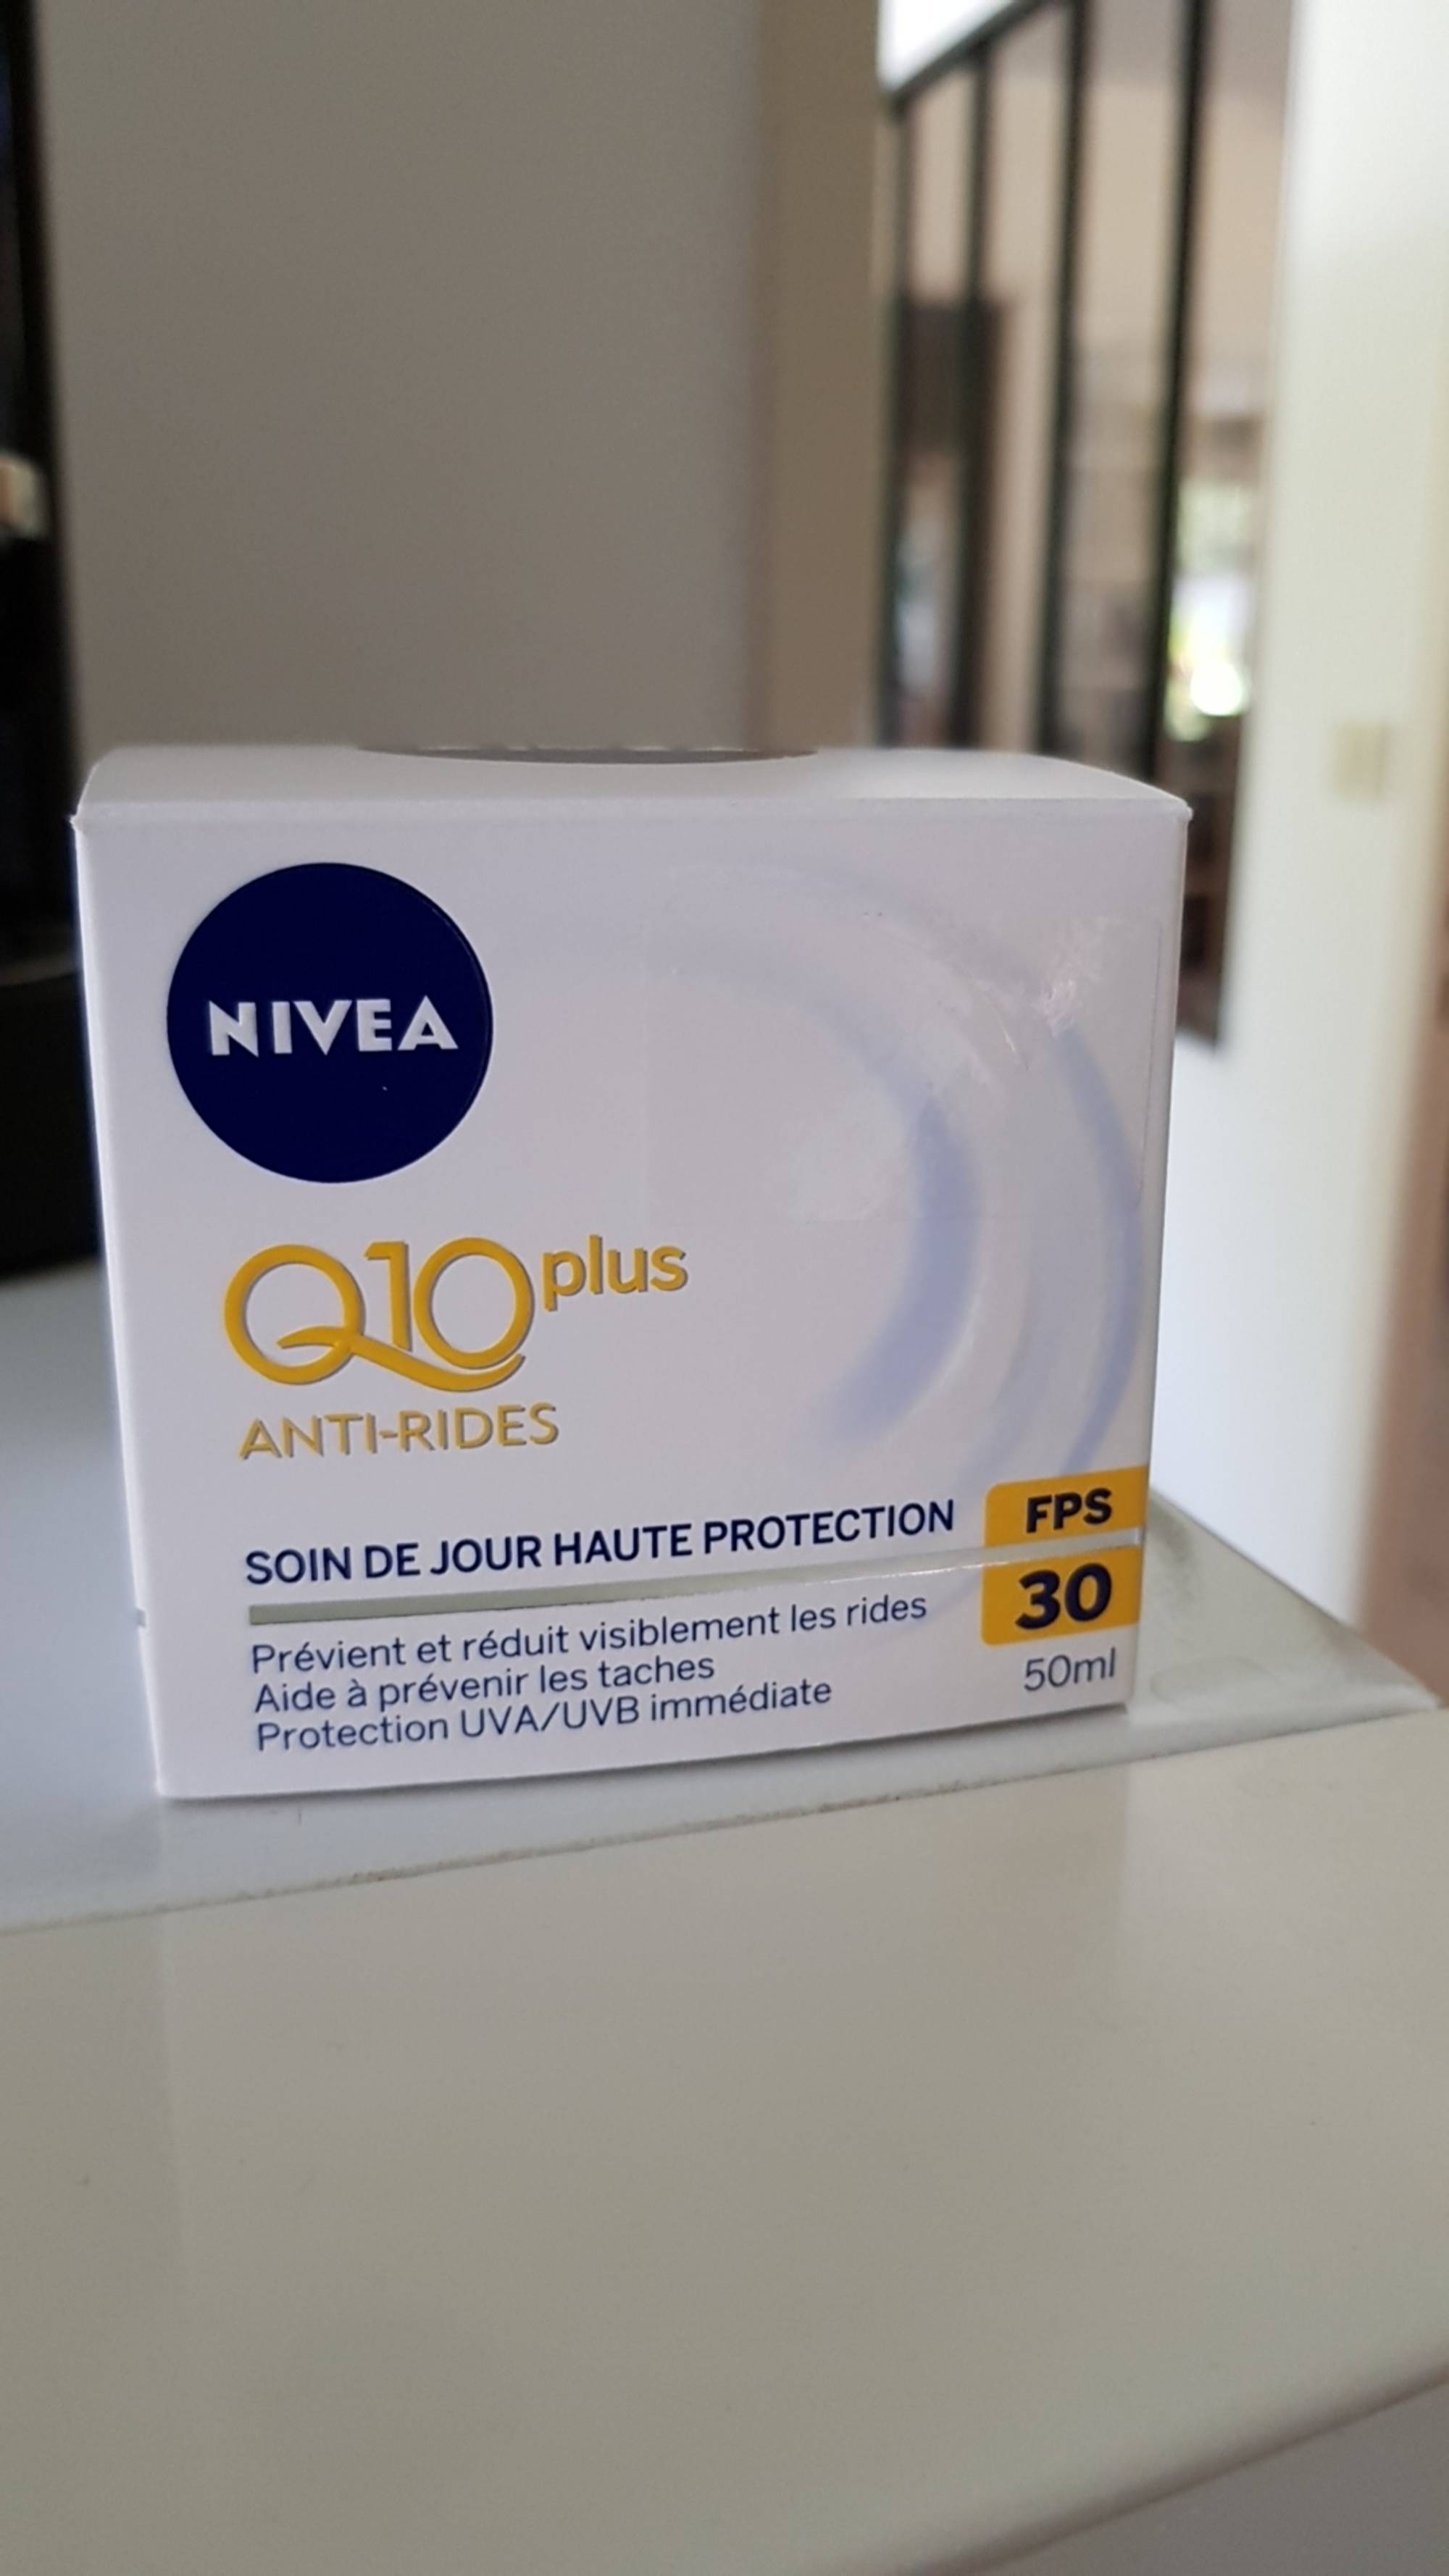 NIVEA SUN Crème visage femme anti-âge & anti-taches FPS 50 2 x 50 ml ,  crème hydratante visage formule Q10 pour usage quotid